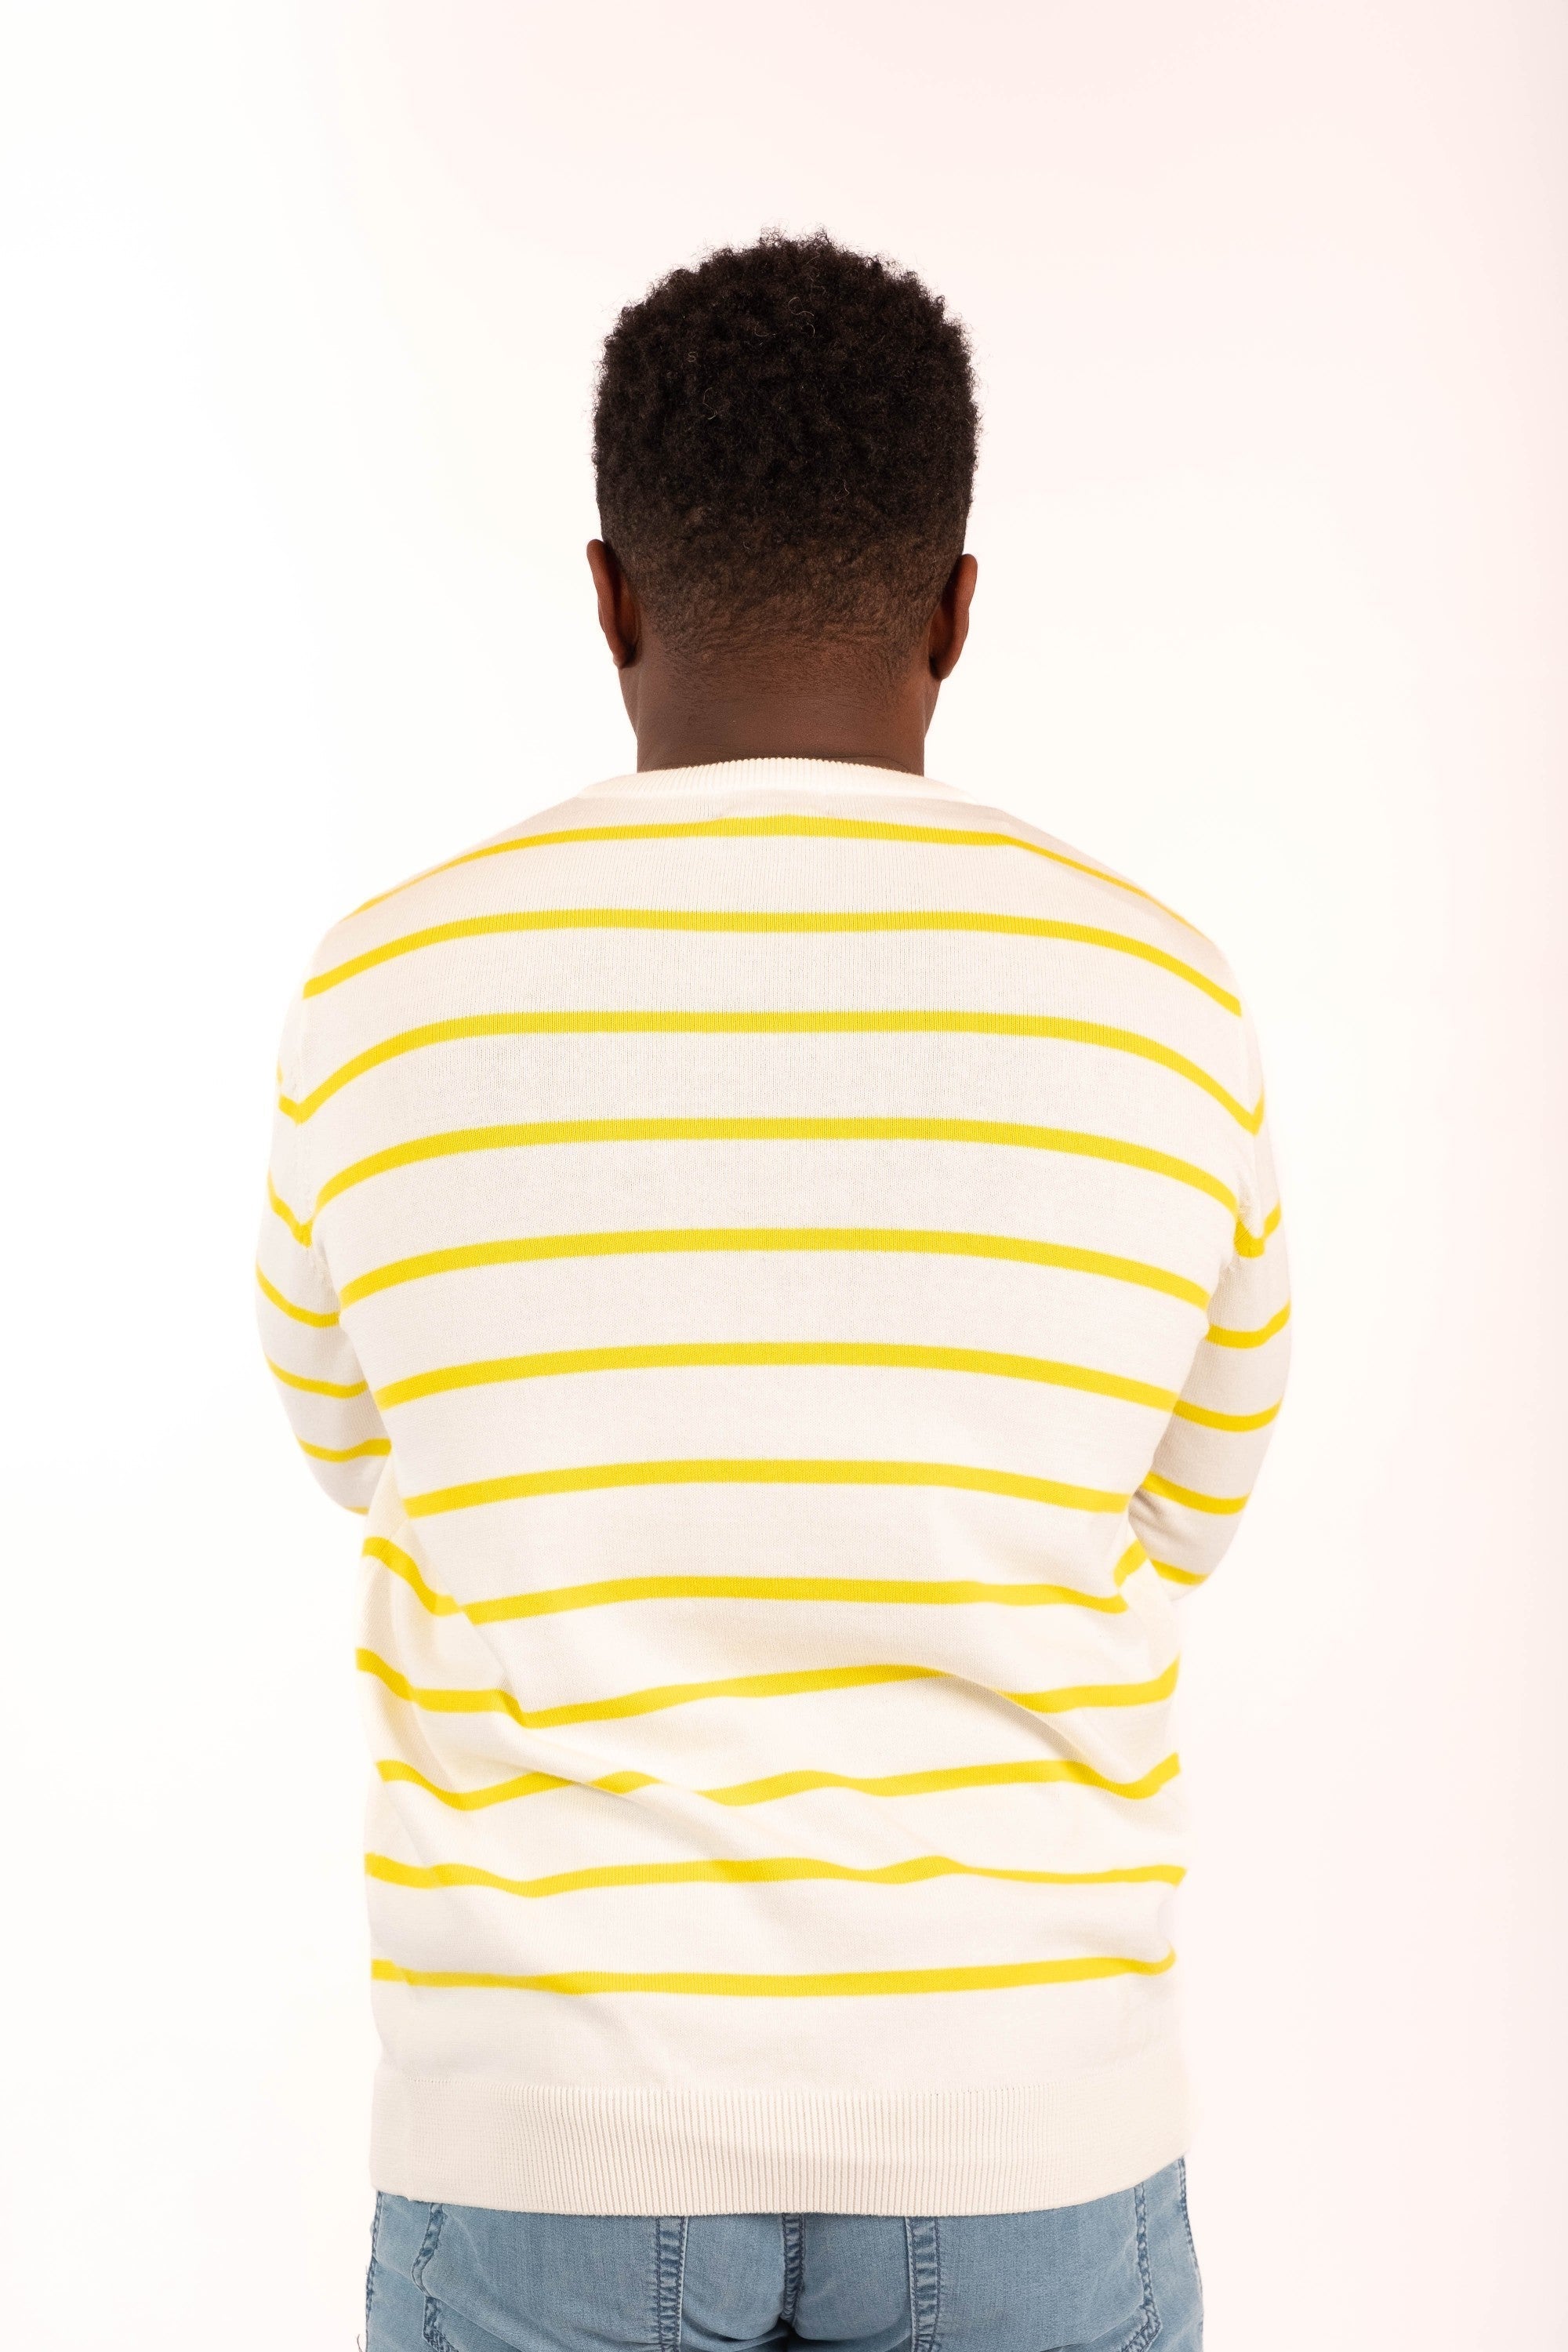 Sweater MARINER HL white/yellow stripe - Cricketco.be